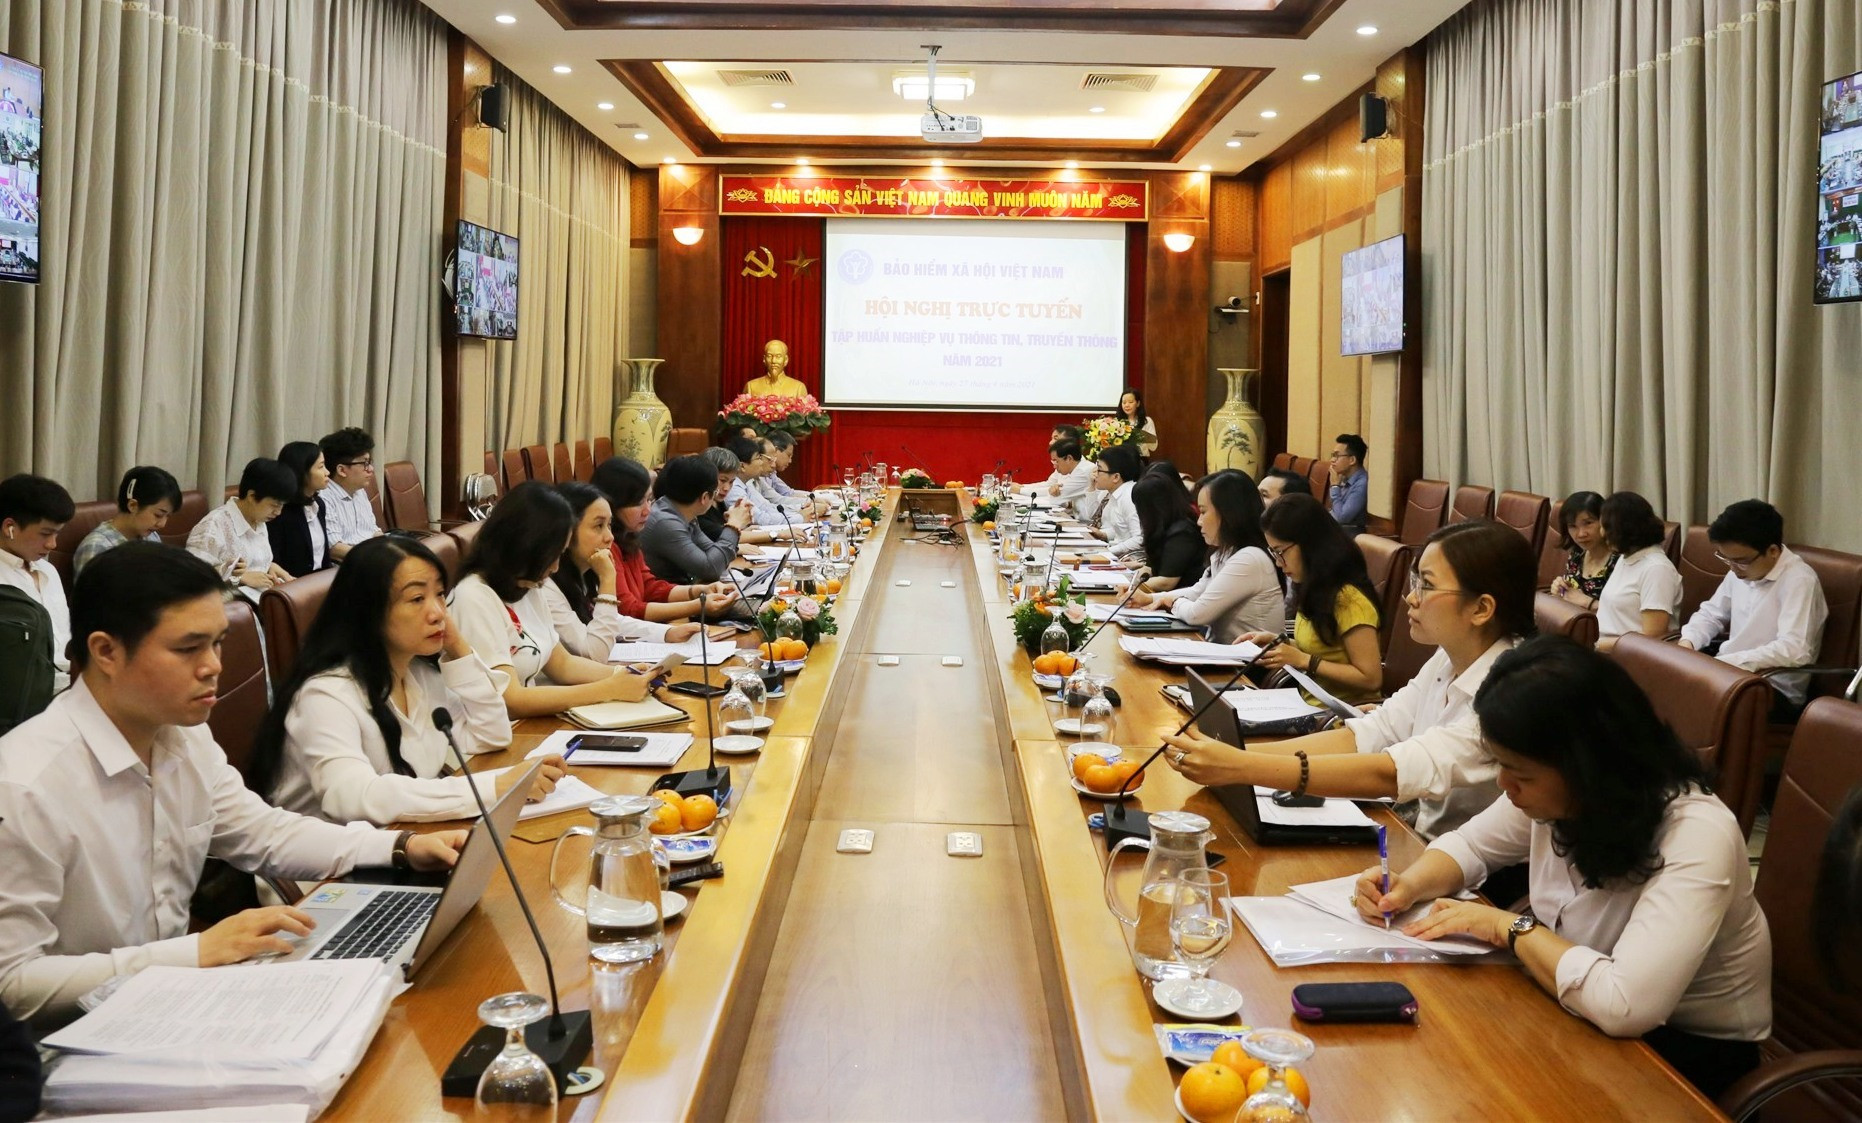 Bảo hiểm xã hội Việt Nam tổ chức hội nghị tập huấn nghiệp vụ thông tin, truyền thông năm 2021. Ảnh: D.L